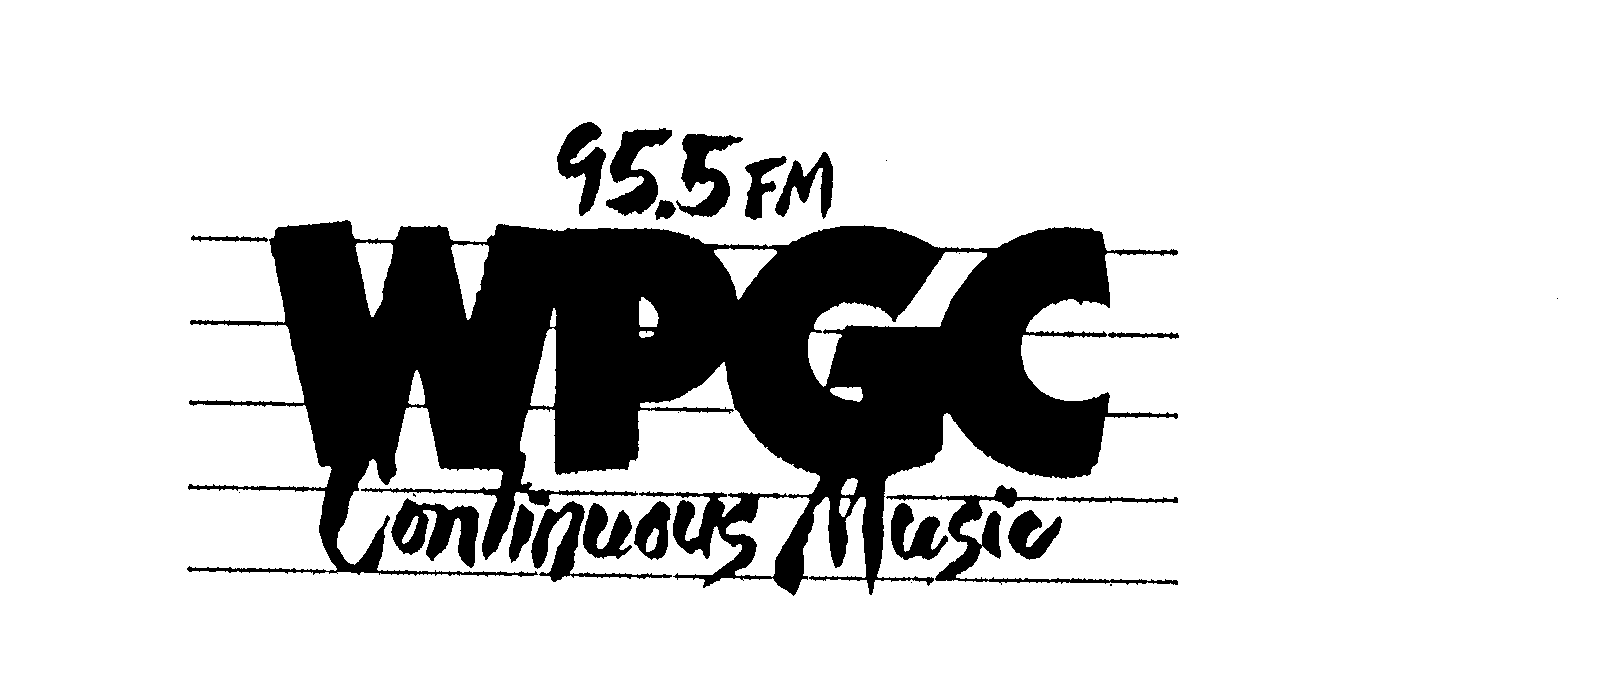  95.5 FM WPGC CONTINUOUS MUSIC